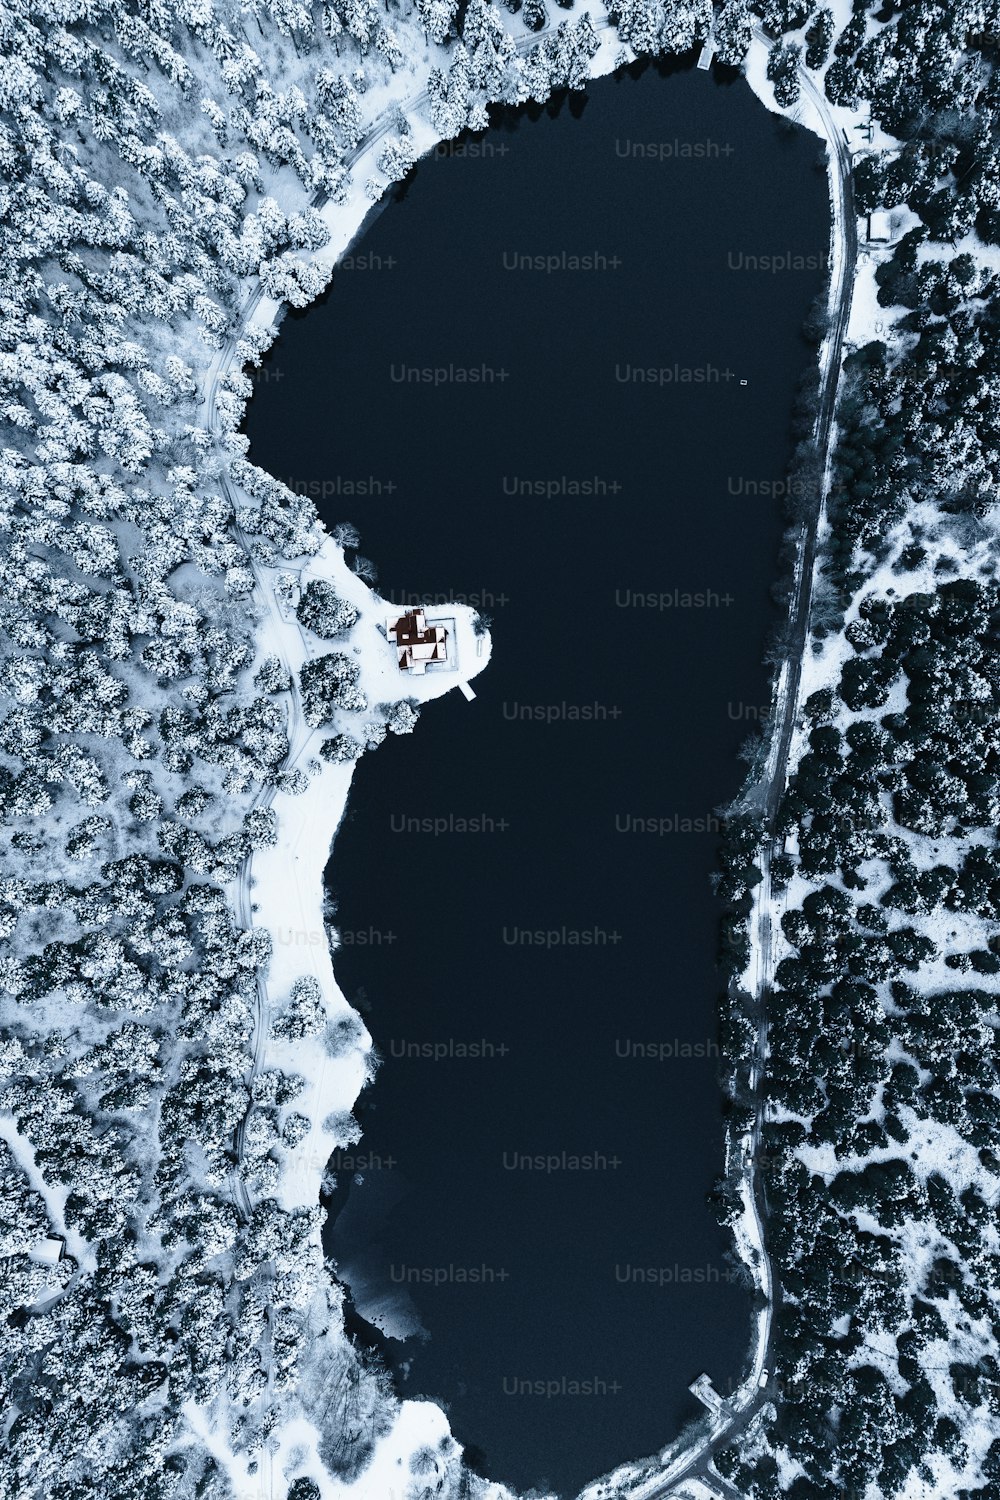 Luftaufnahme eines von Schnee umgebenen Sees